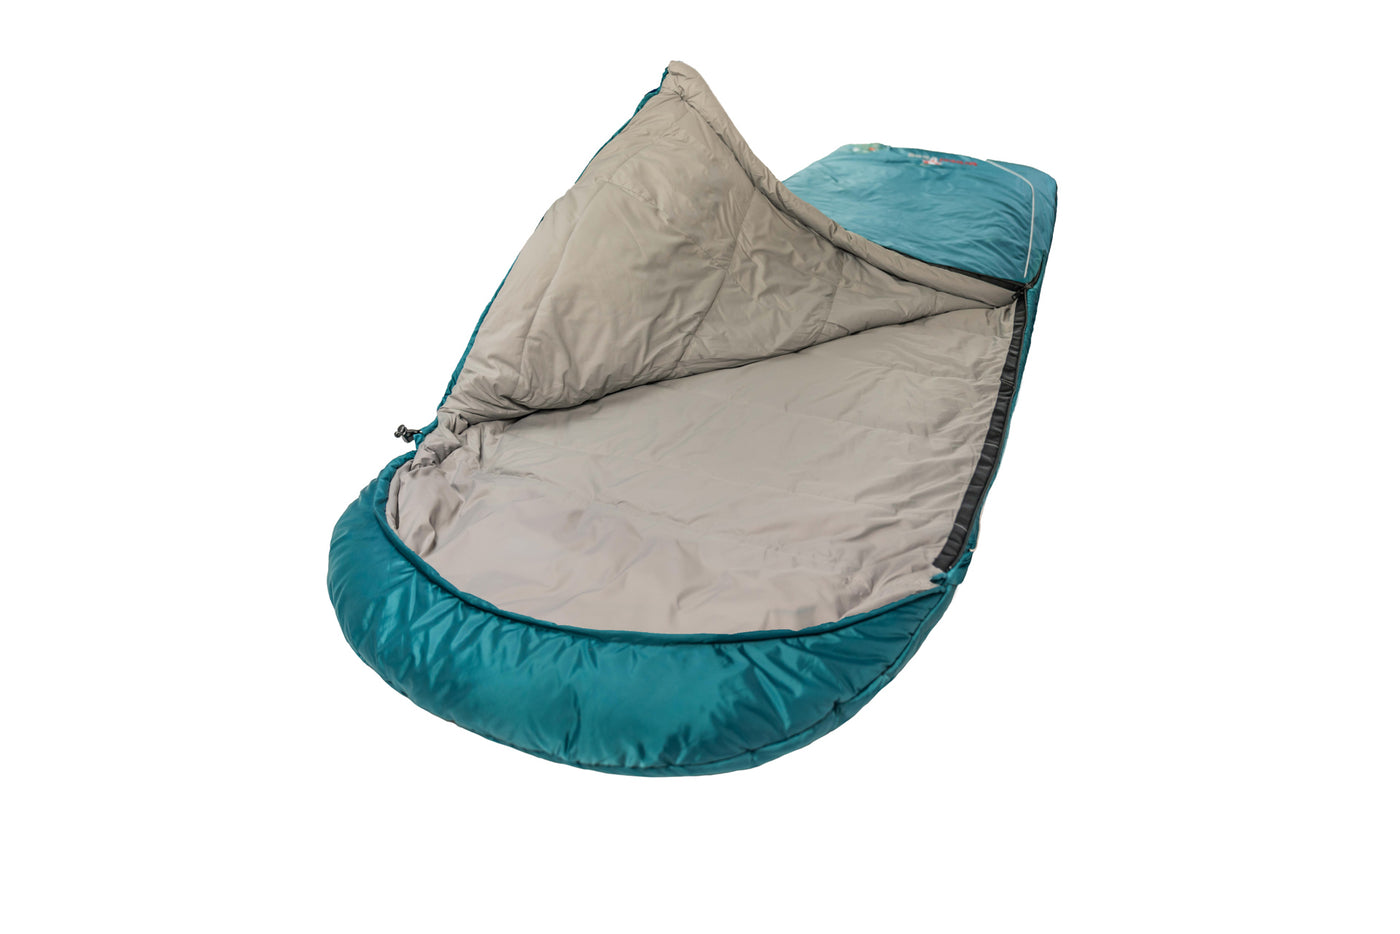 Grüezi bag Komfortschlafsack Biopod Wolle Goas Comfort - Schrägansicht aufgeschlagen